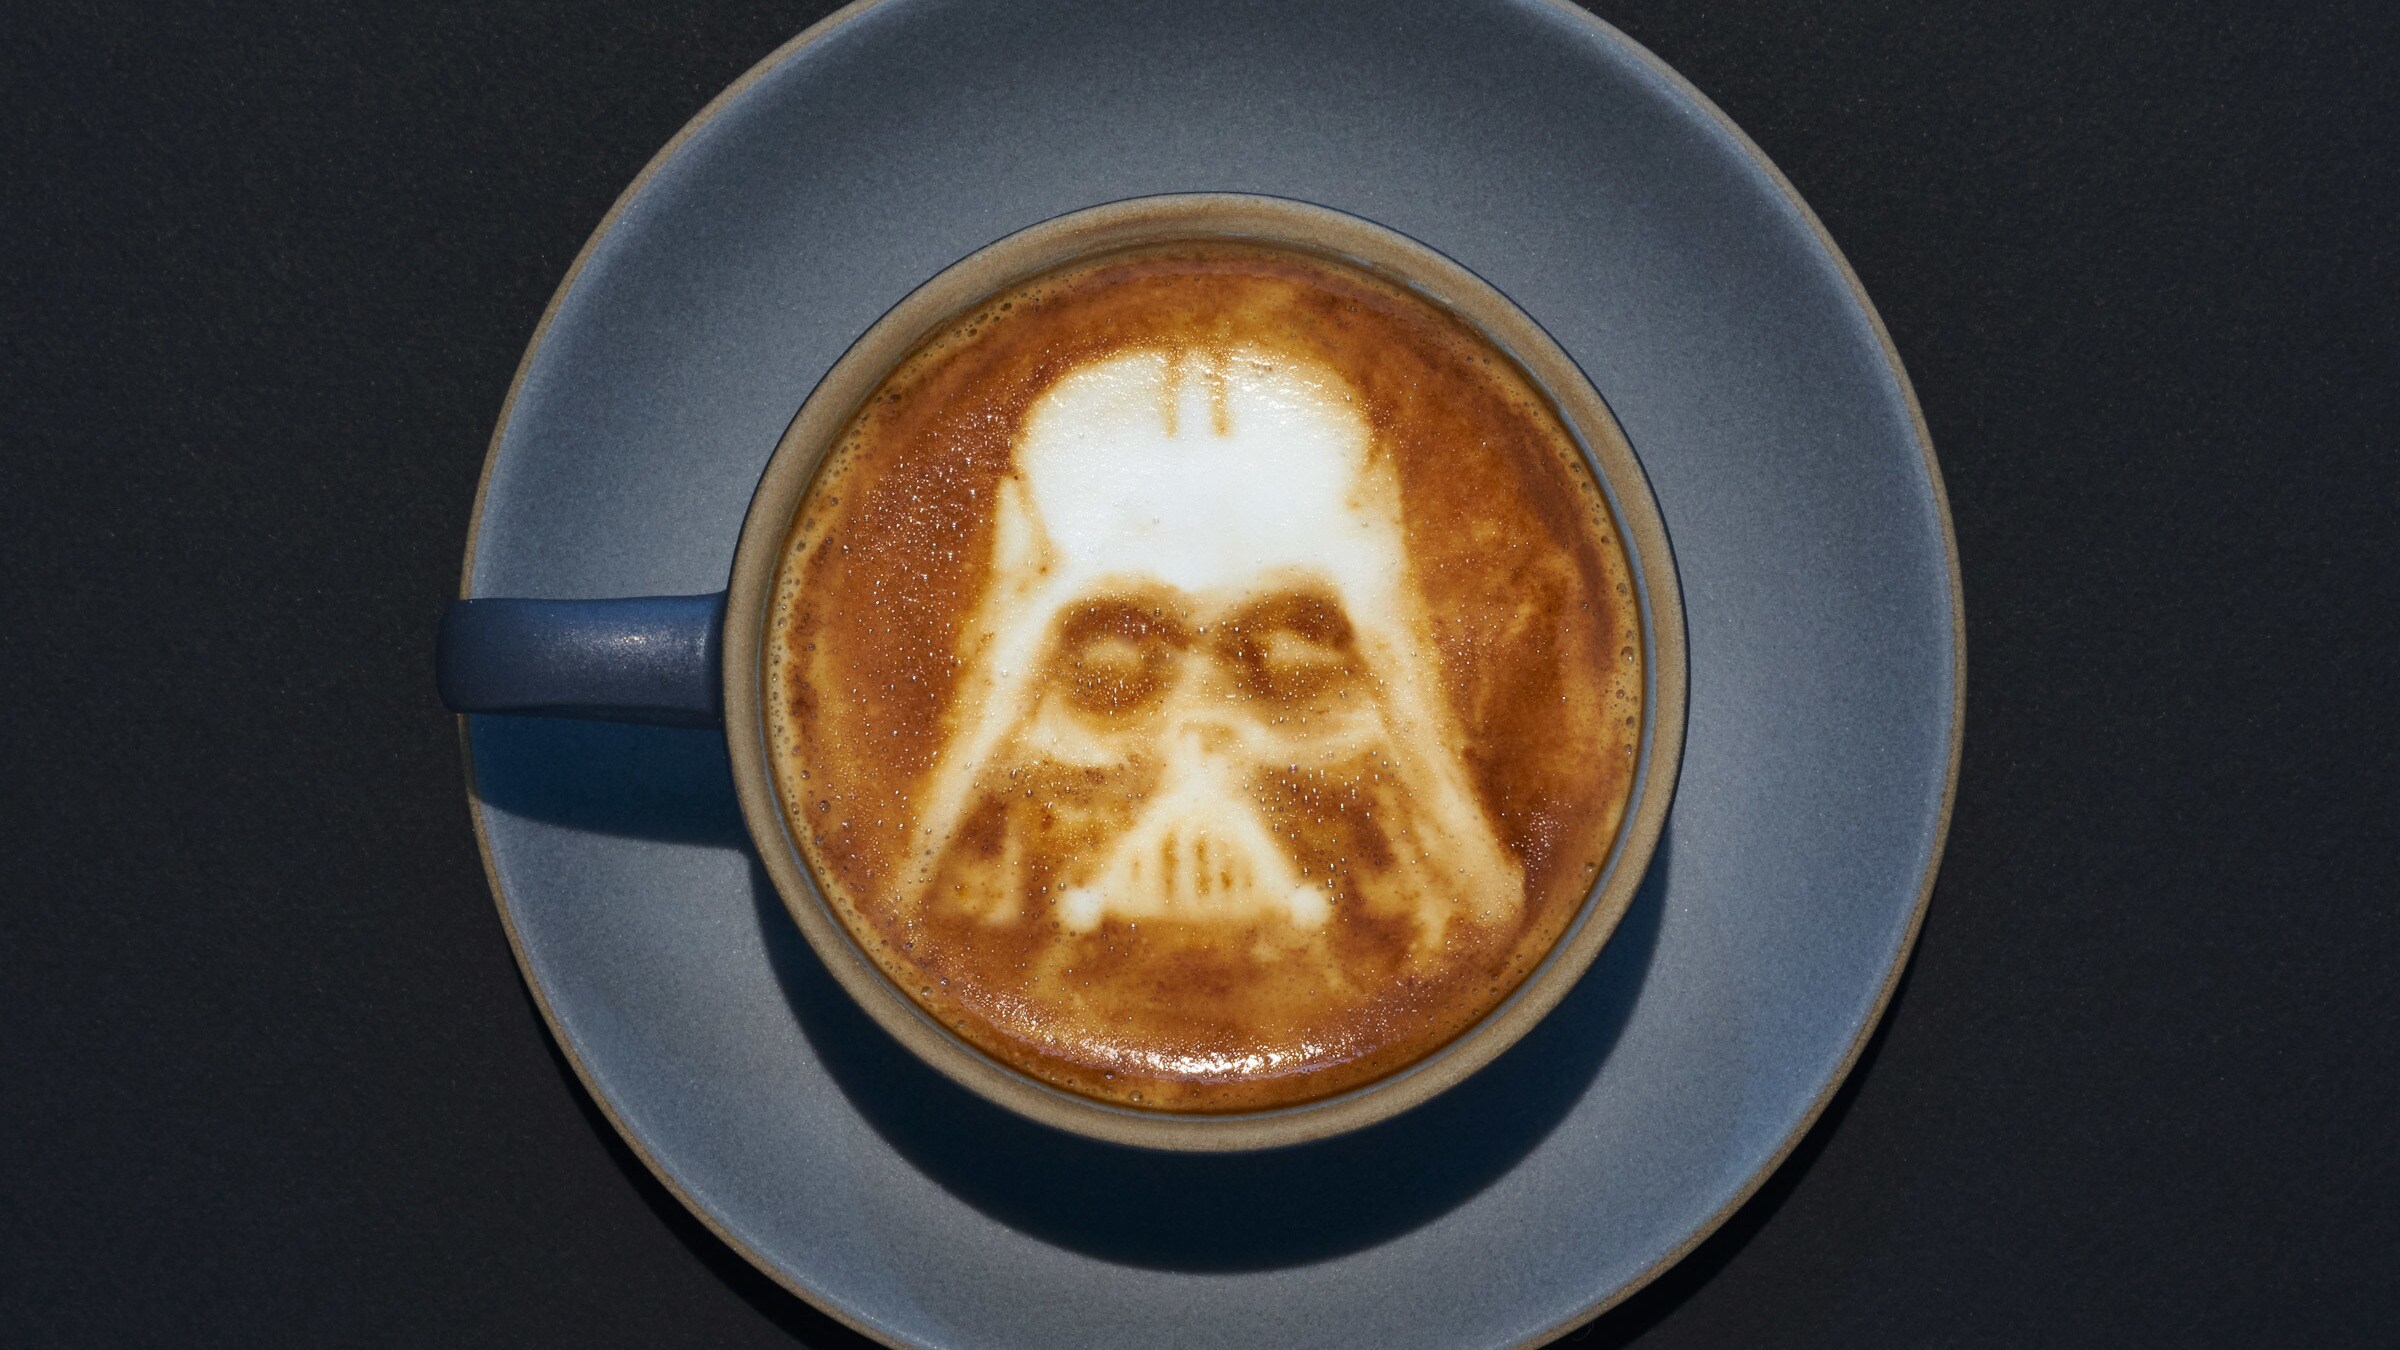 Darth Vader latte art